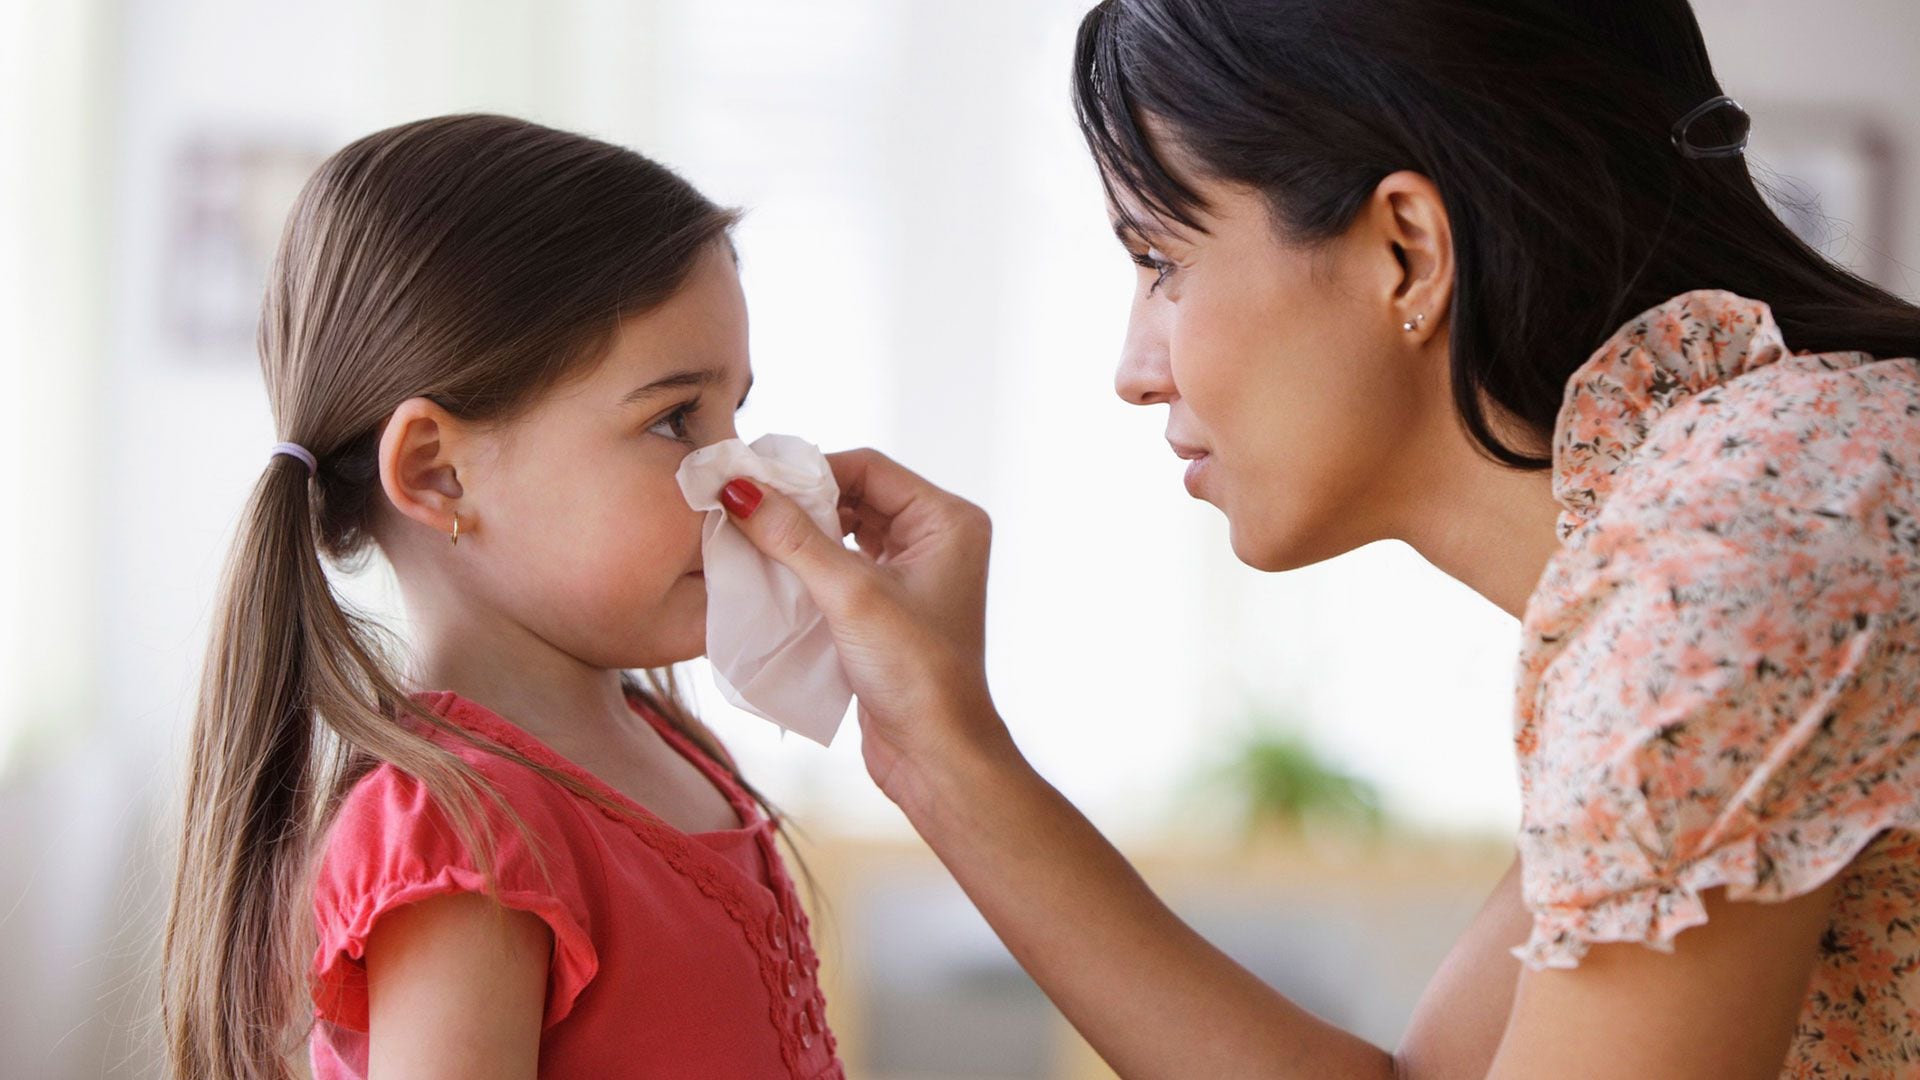 En ocasiones, el bloqueo, congestión u obstrucción nasal aparece luego de 4 a 6 horas de la exposición a los alergenos. La nariz se tapa por la perpetuación de la inflamación